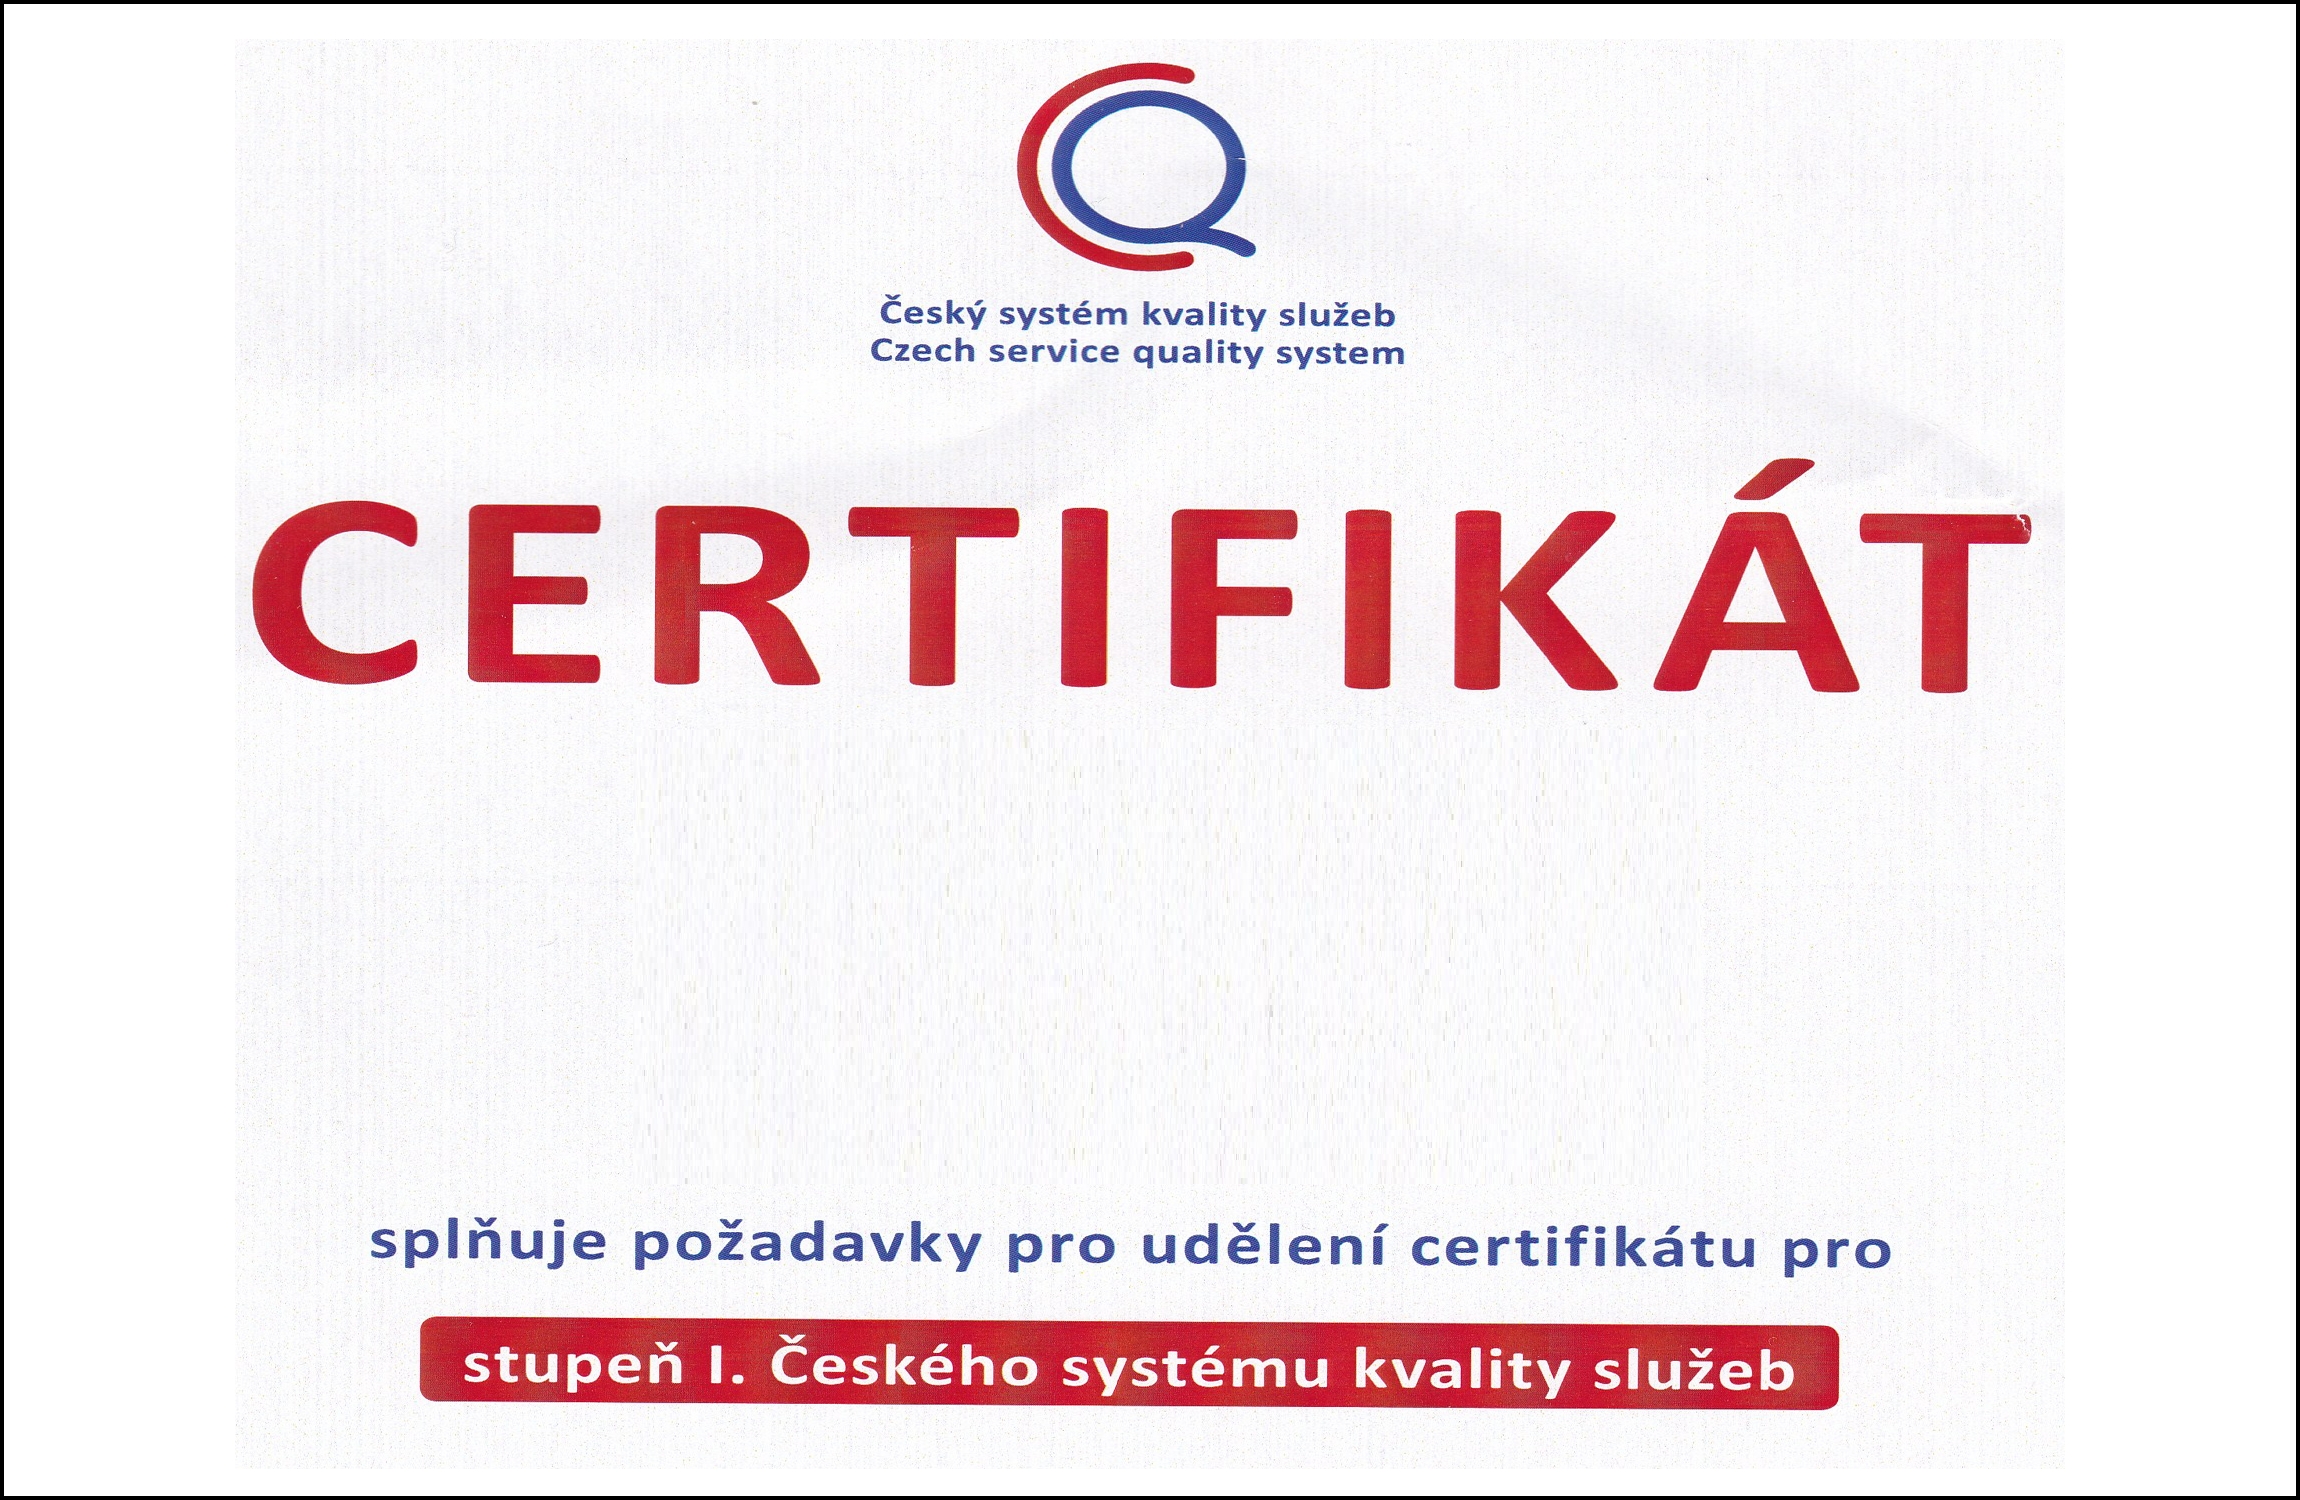 Certifikát správa cest. ruchu - archivní foto